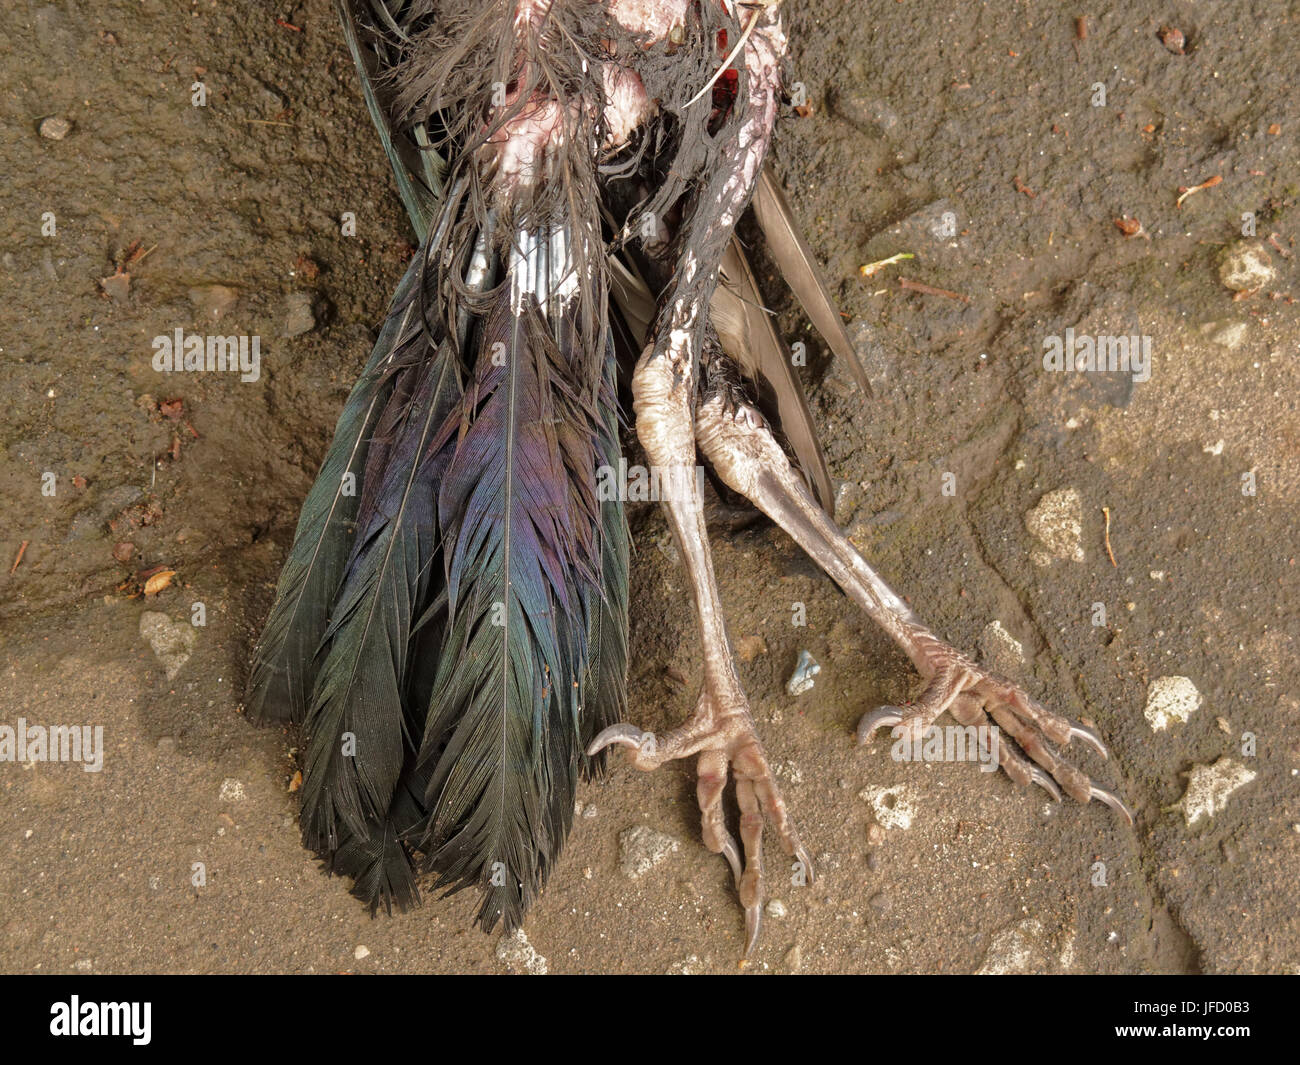 Toter Vogel Roadkill fauligen verwesenden Kadaver Schnabel, Krallen Beinen Stockfoto